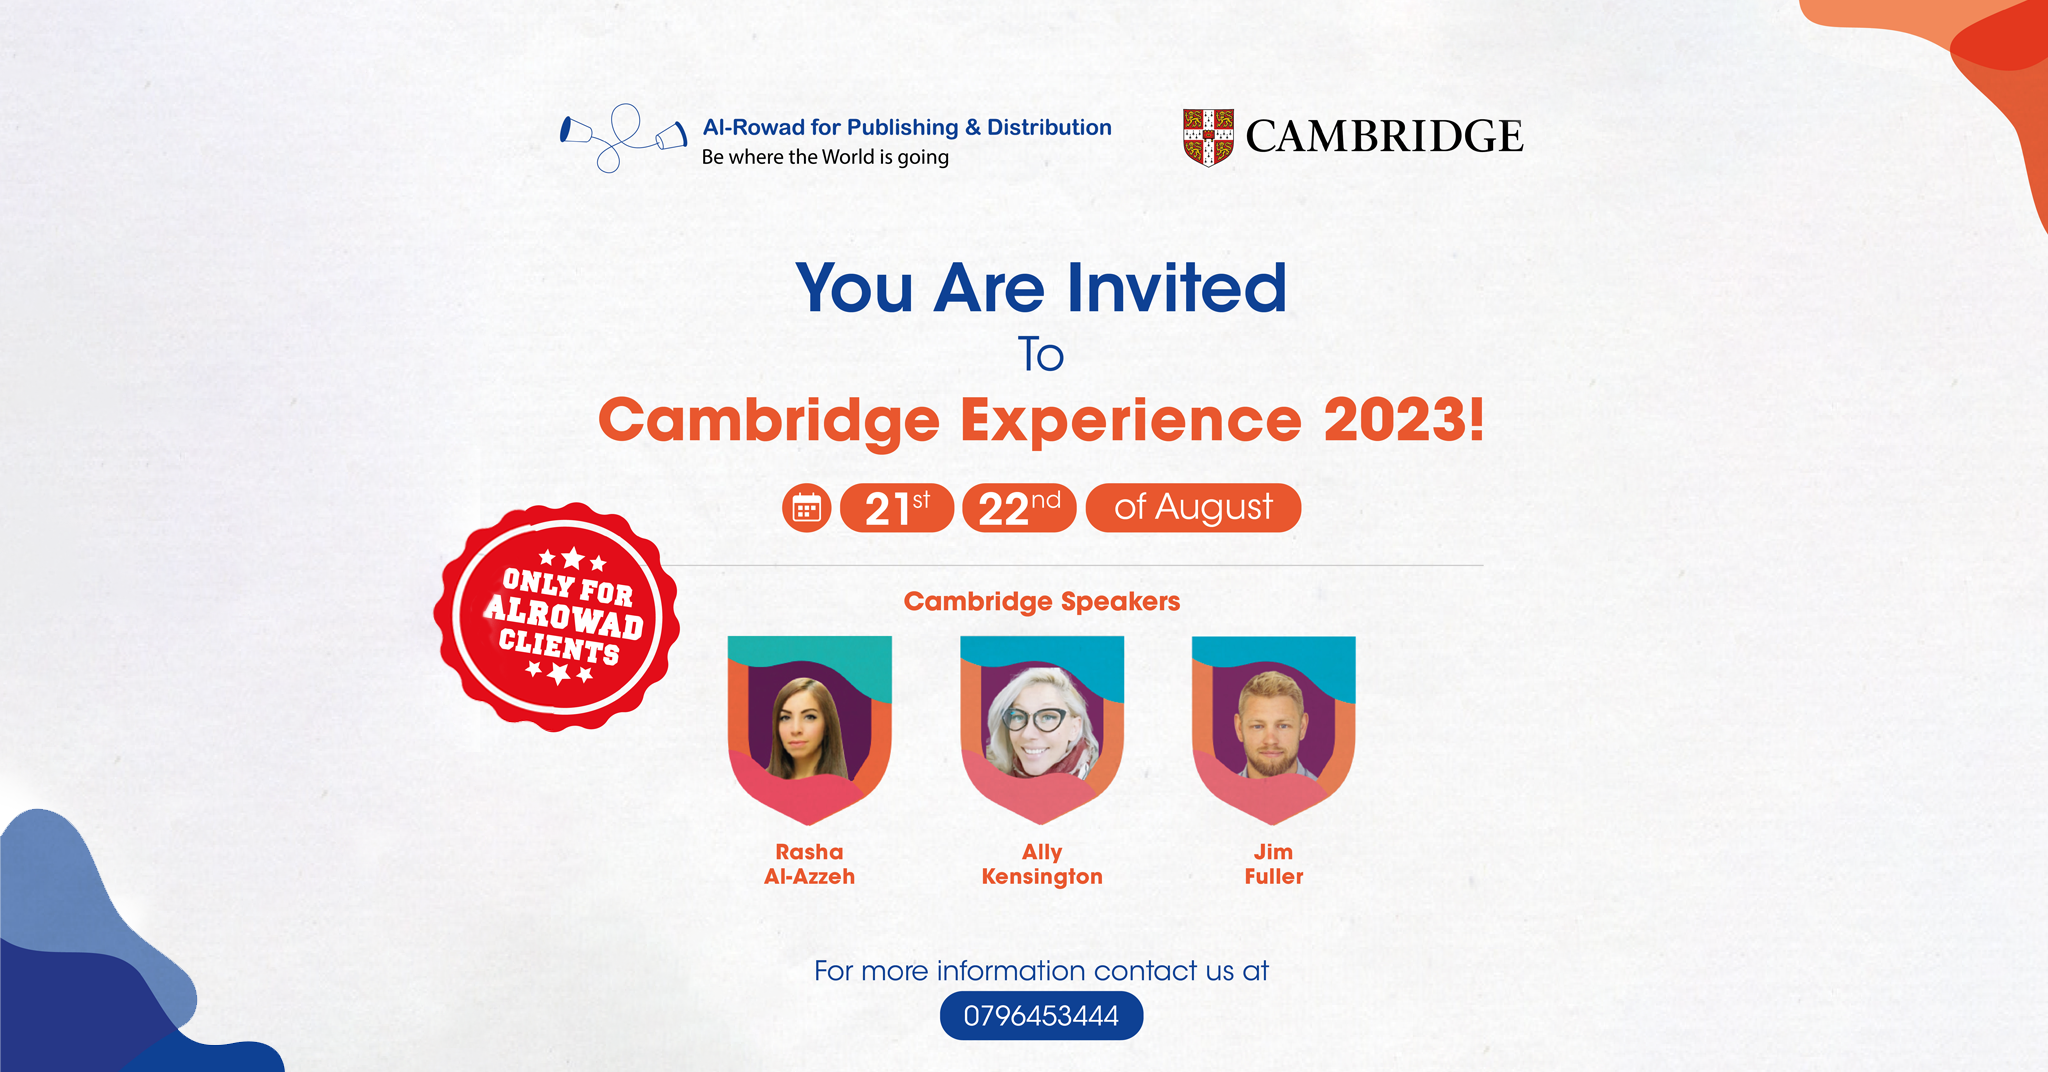 Cambridge Experience 2023!